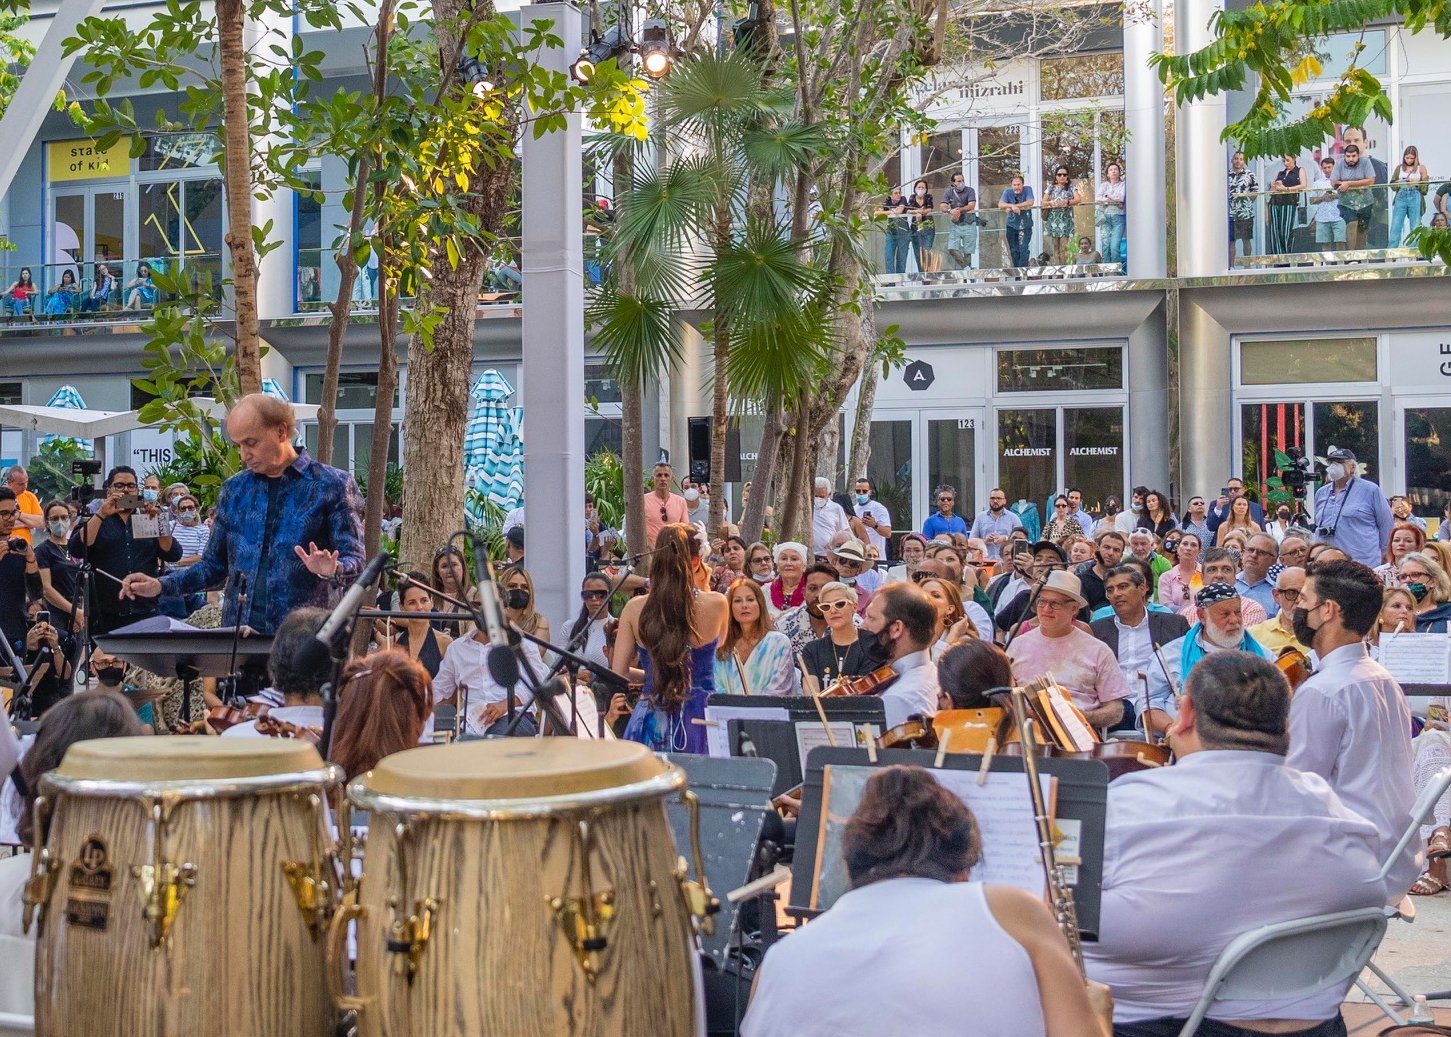 La Orquesta Sinfonica Presenta Concierto 'Music in Paradise' en el Miami Design District